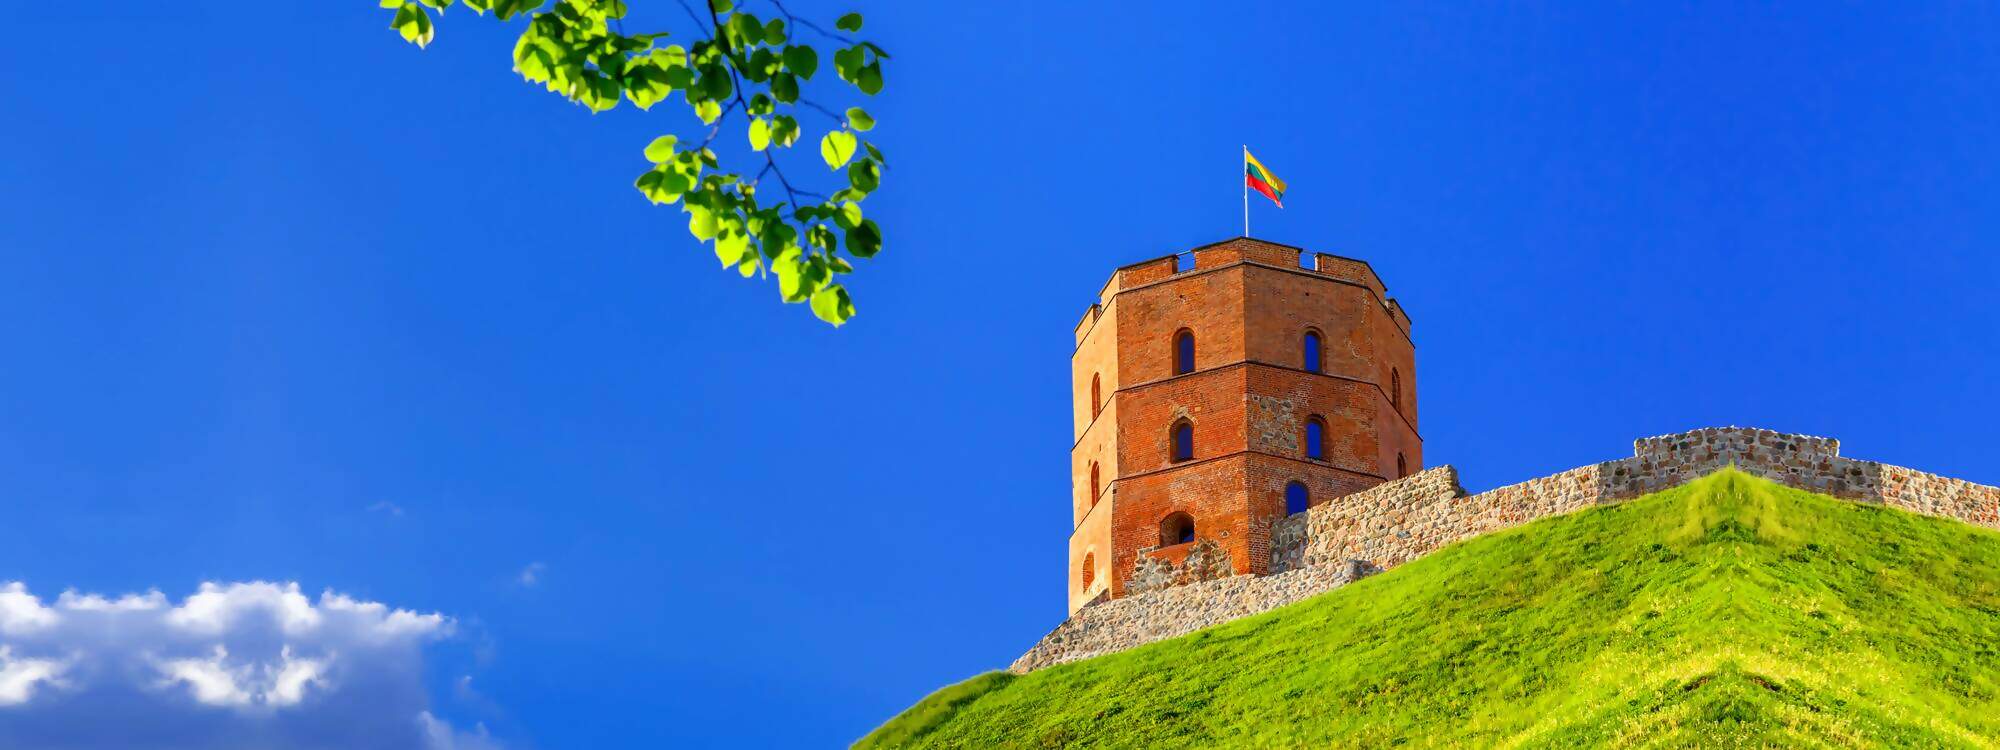 Der Turm Gediminas in Vilnius die Hauptstadt von Litauen